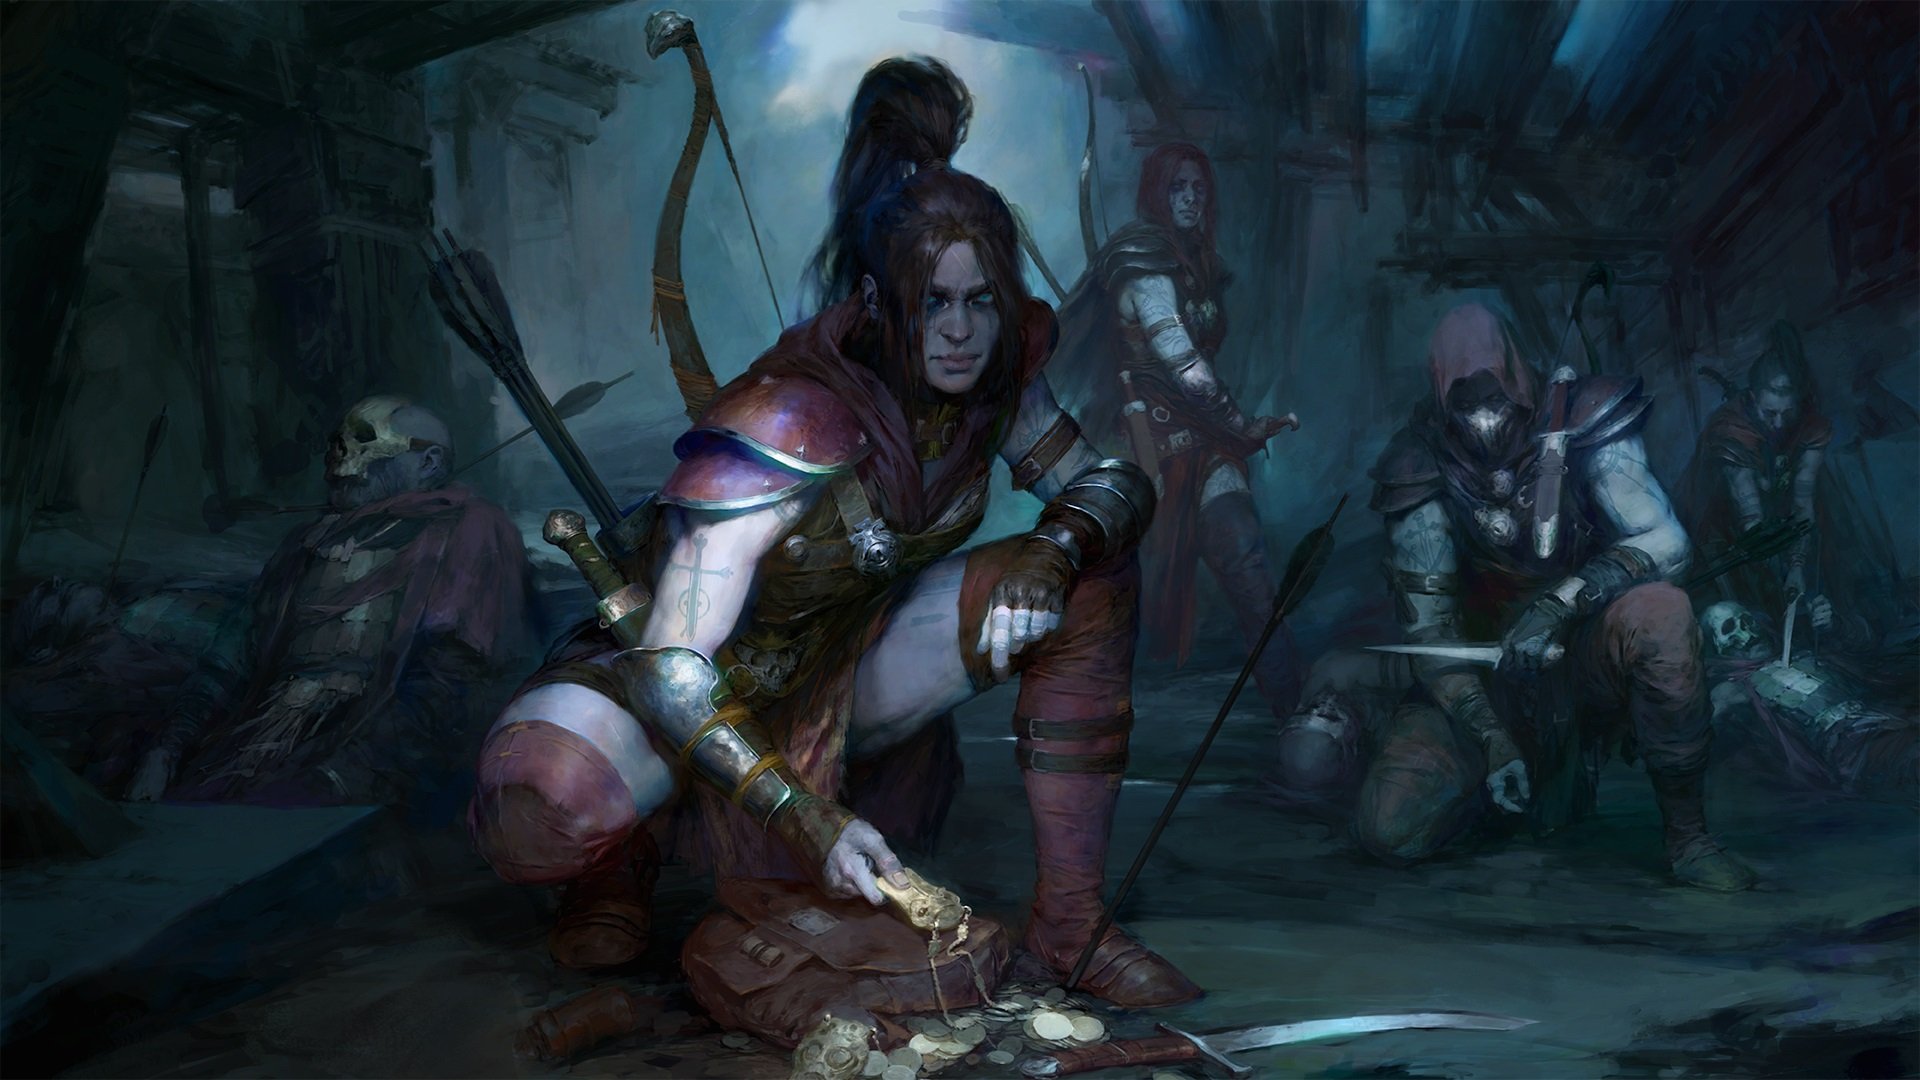 Diablo IV Beta on Battle.net Launcher - Wowhead News